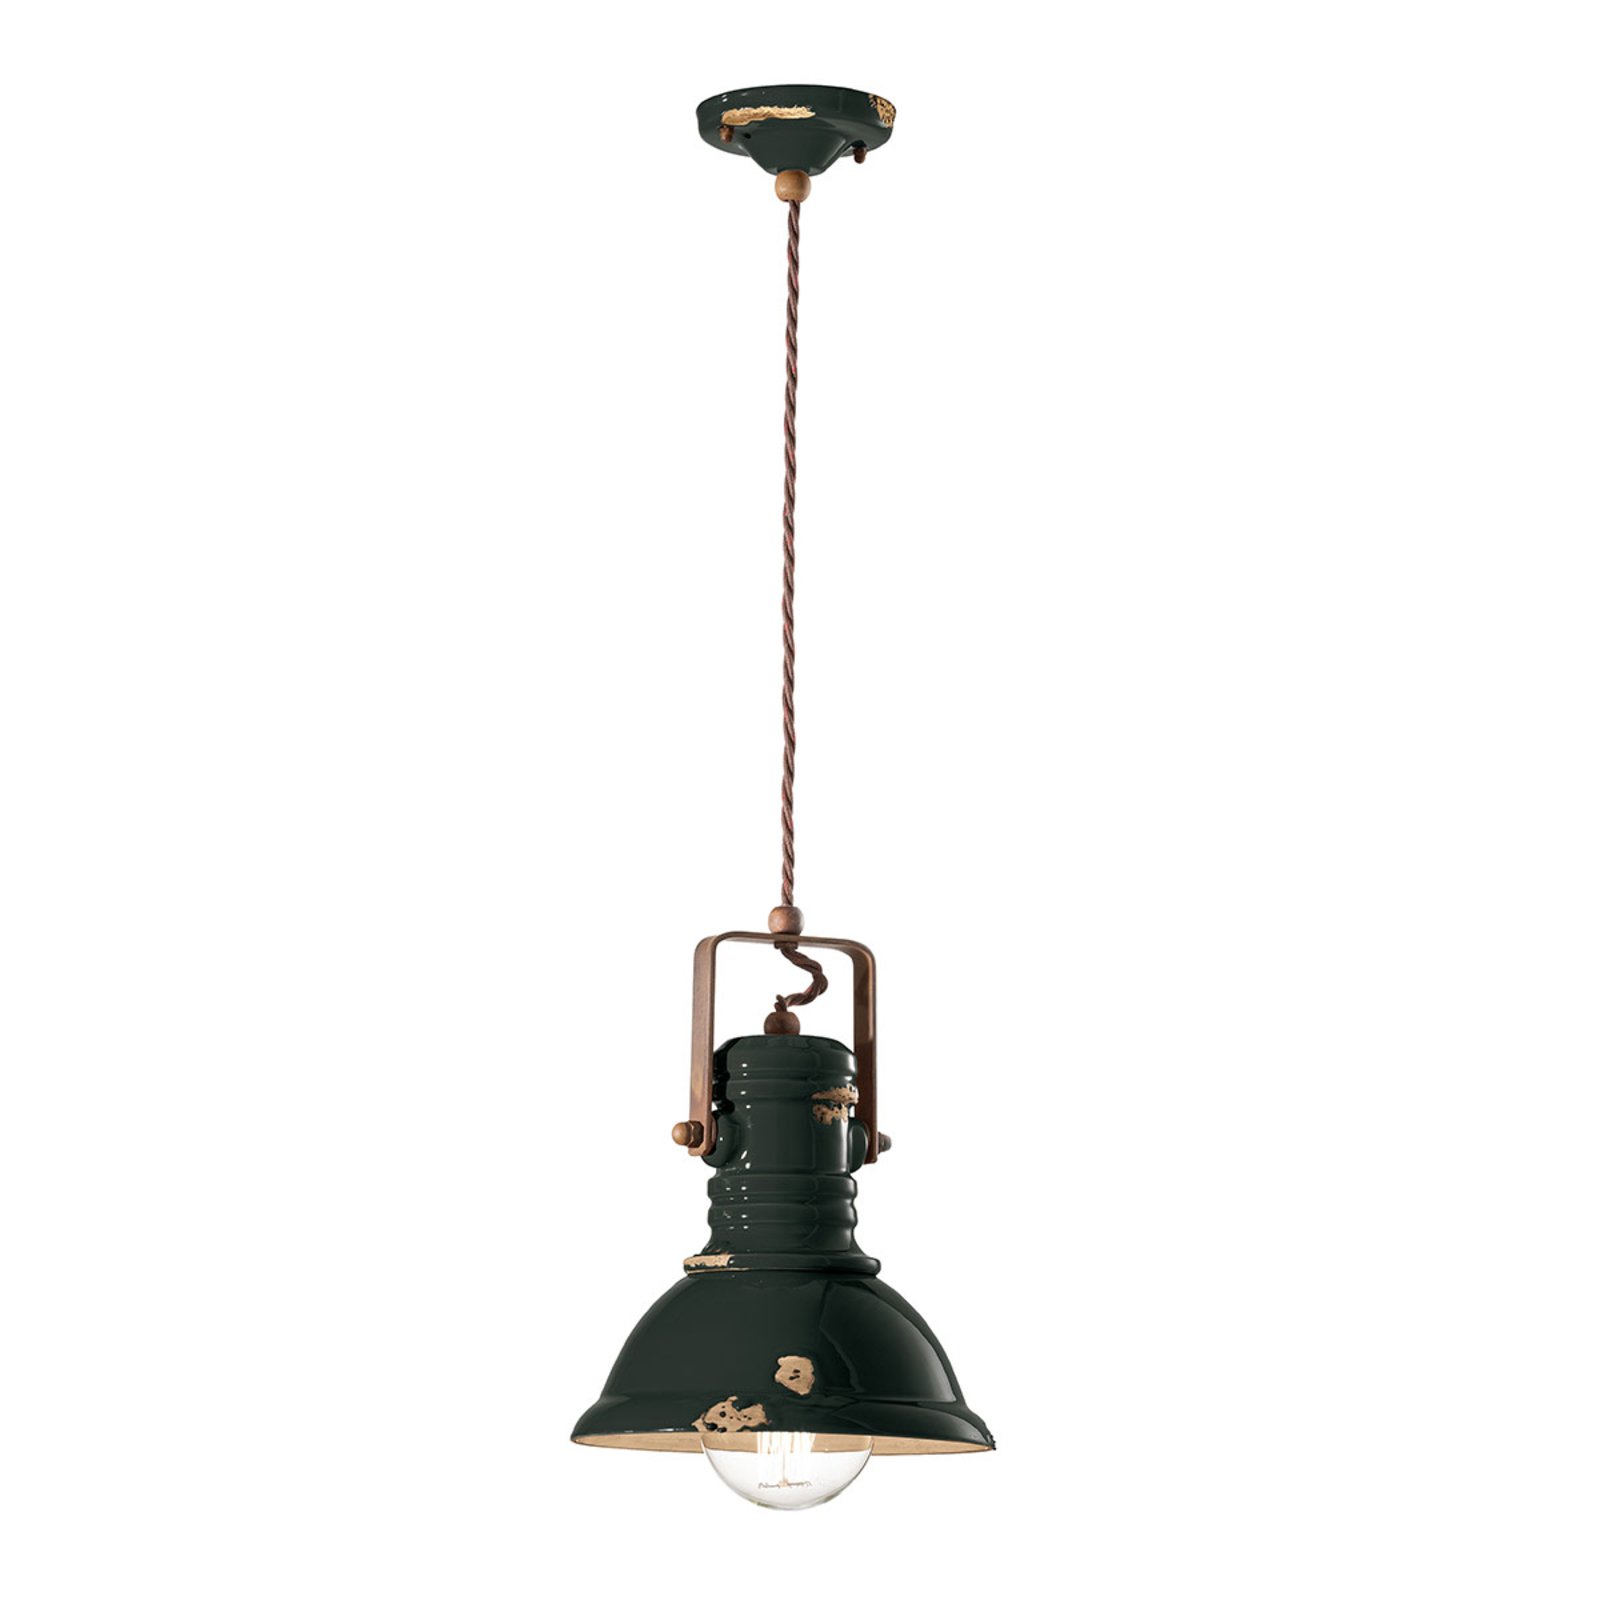 Hanglamp C1691 in zwart industrieel ontwerp